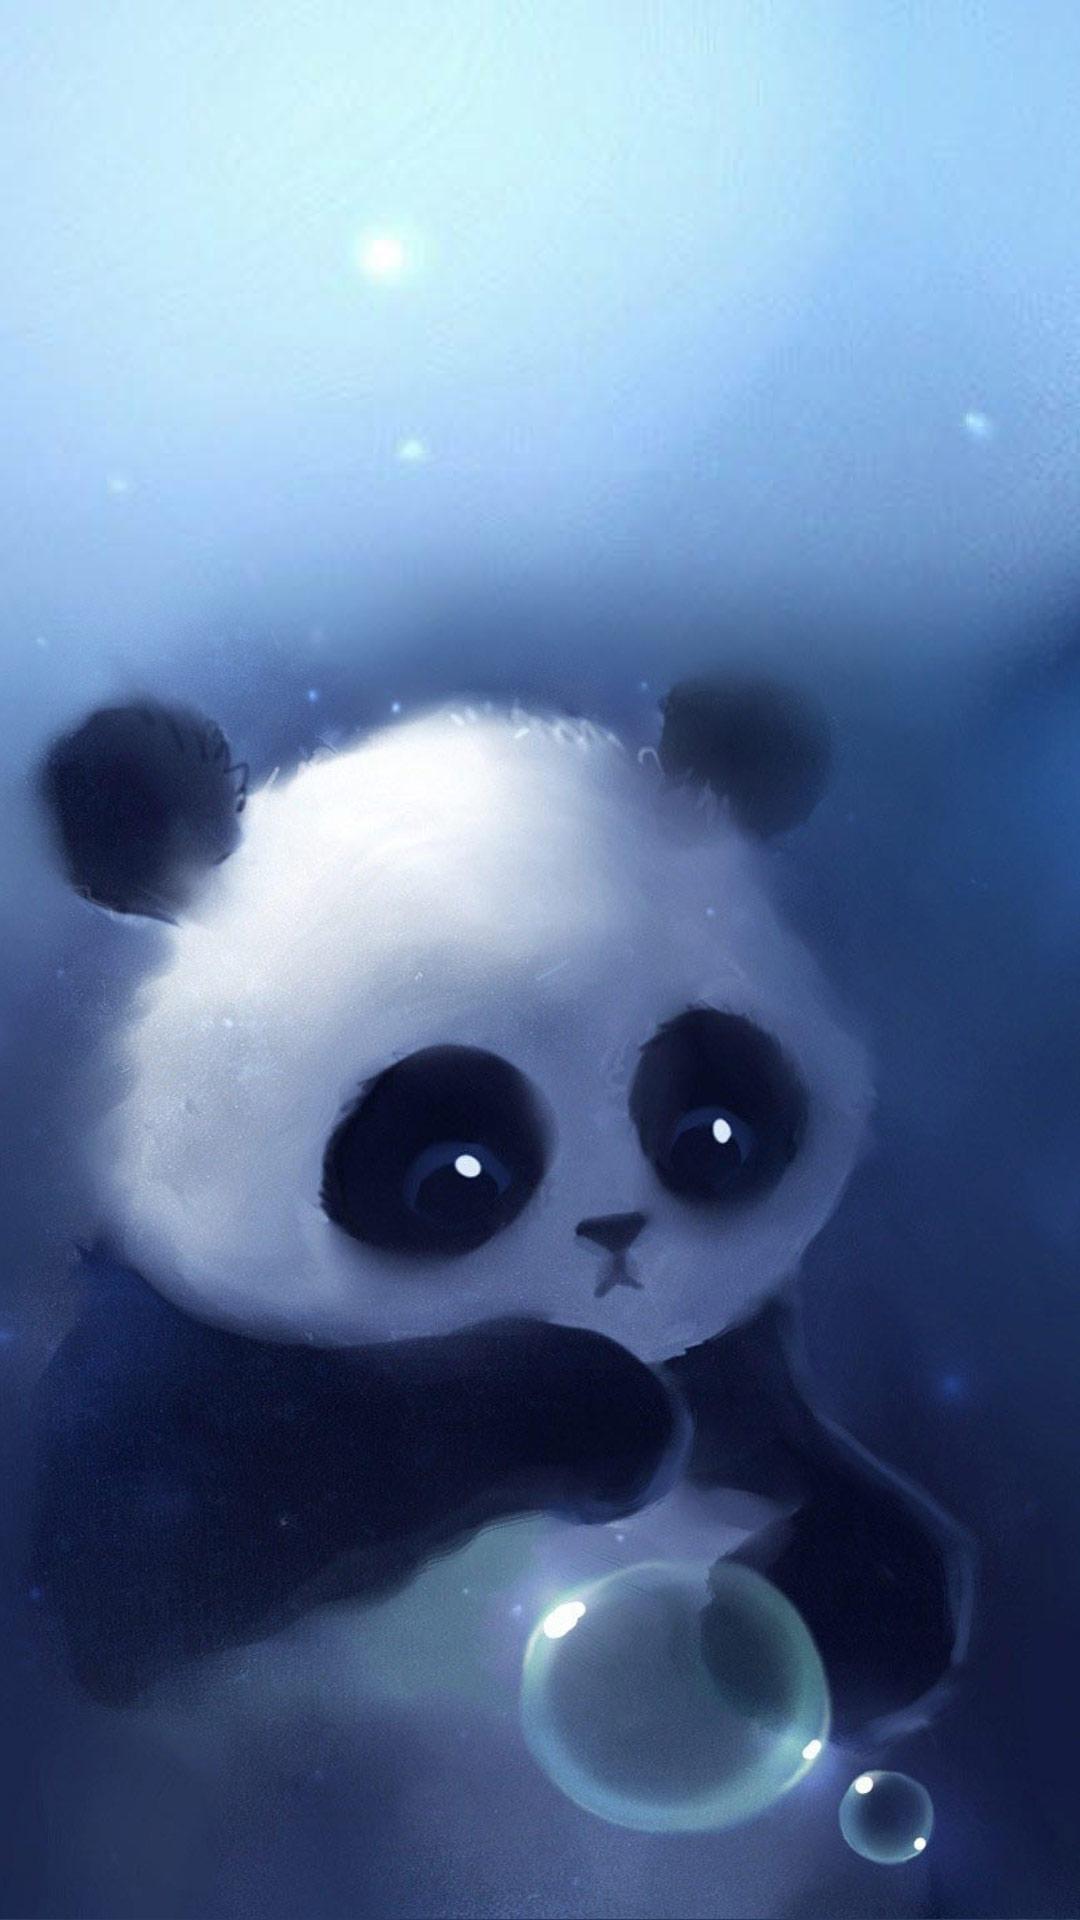 Baby Cartoon Cute Wallpaper Baby Cartoon Cute Panda Image